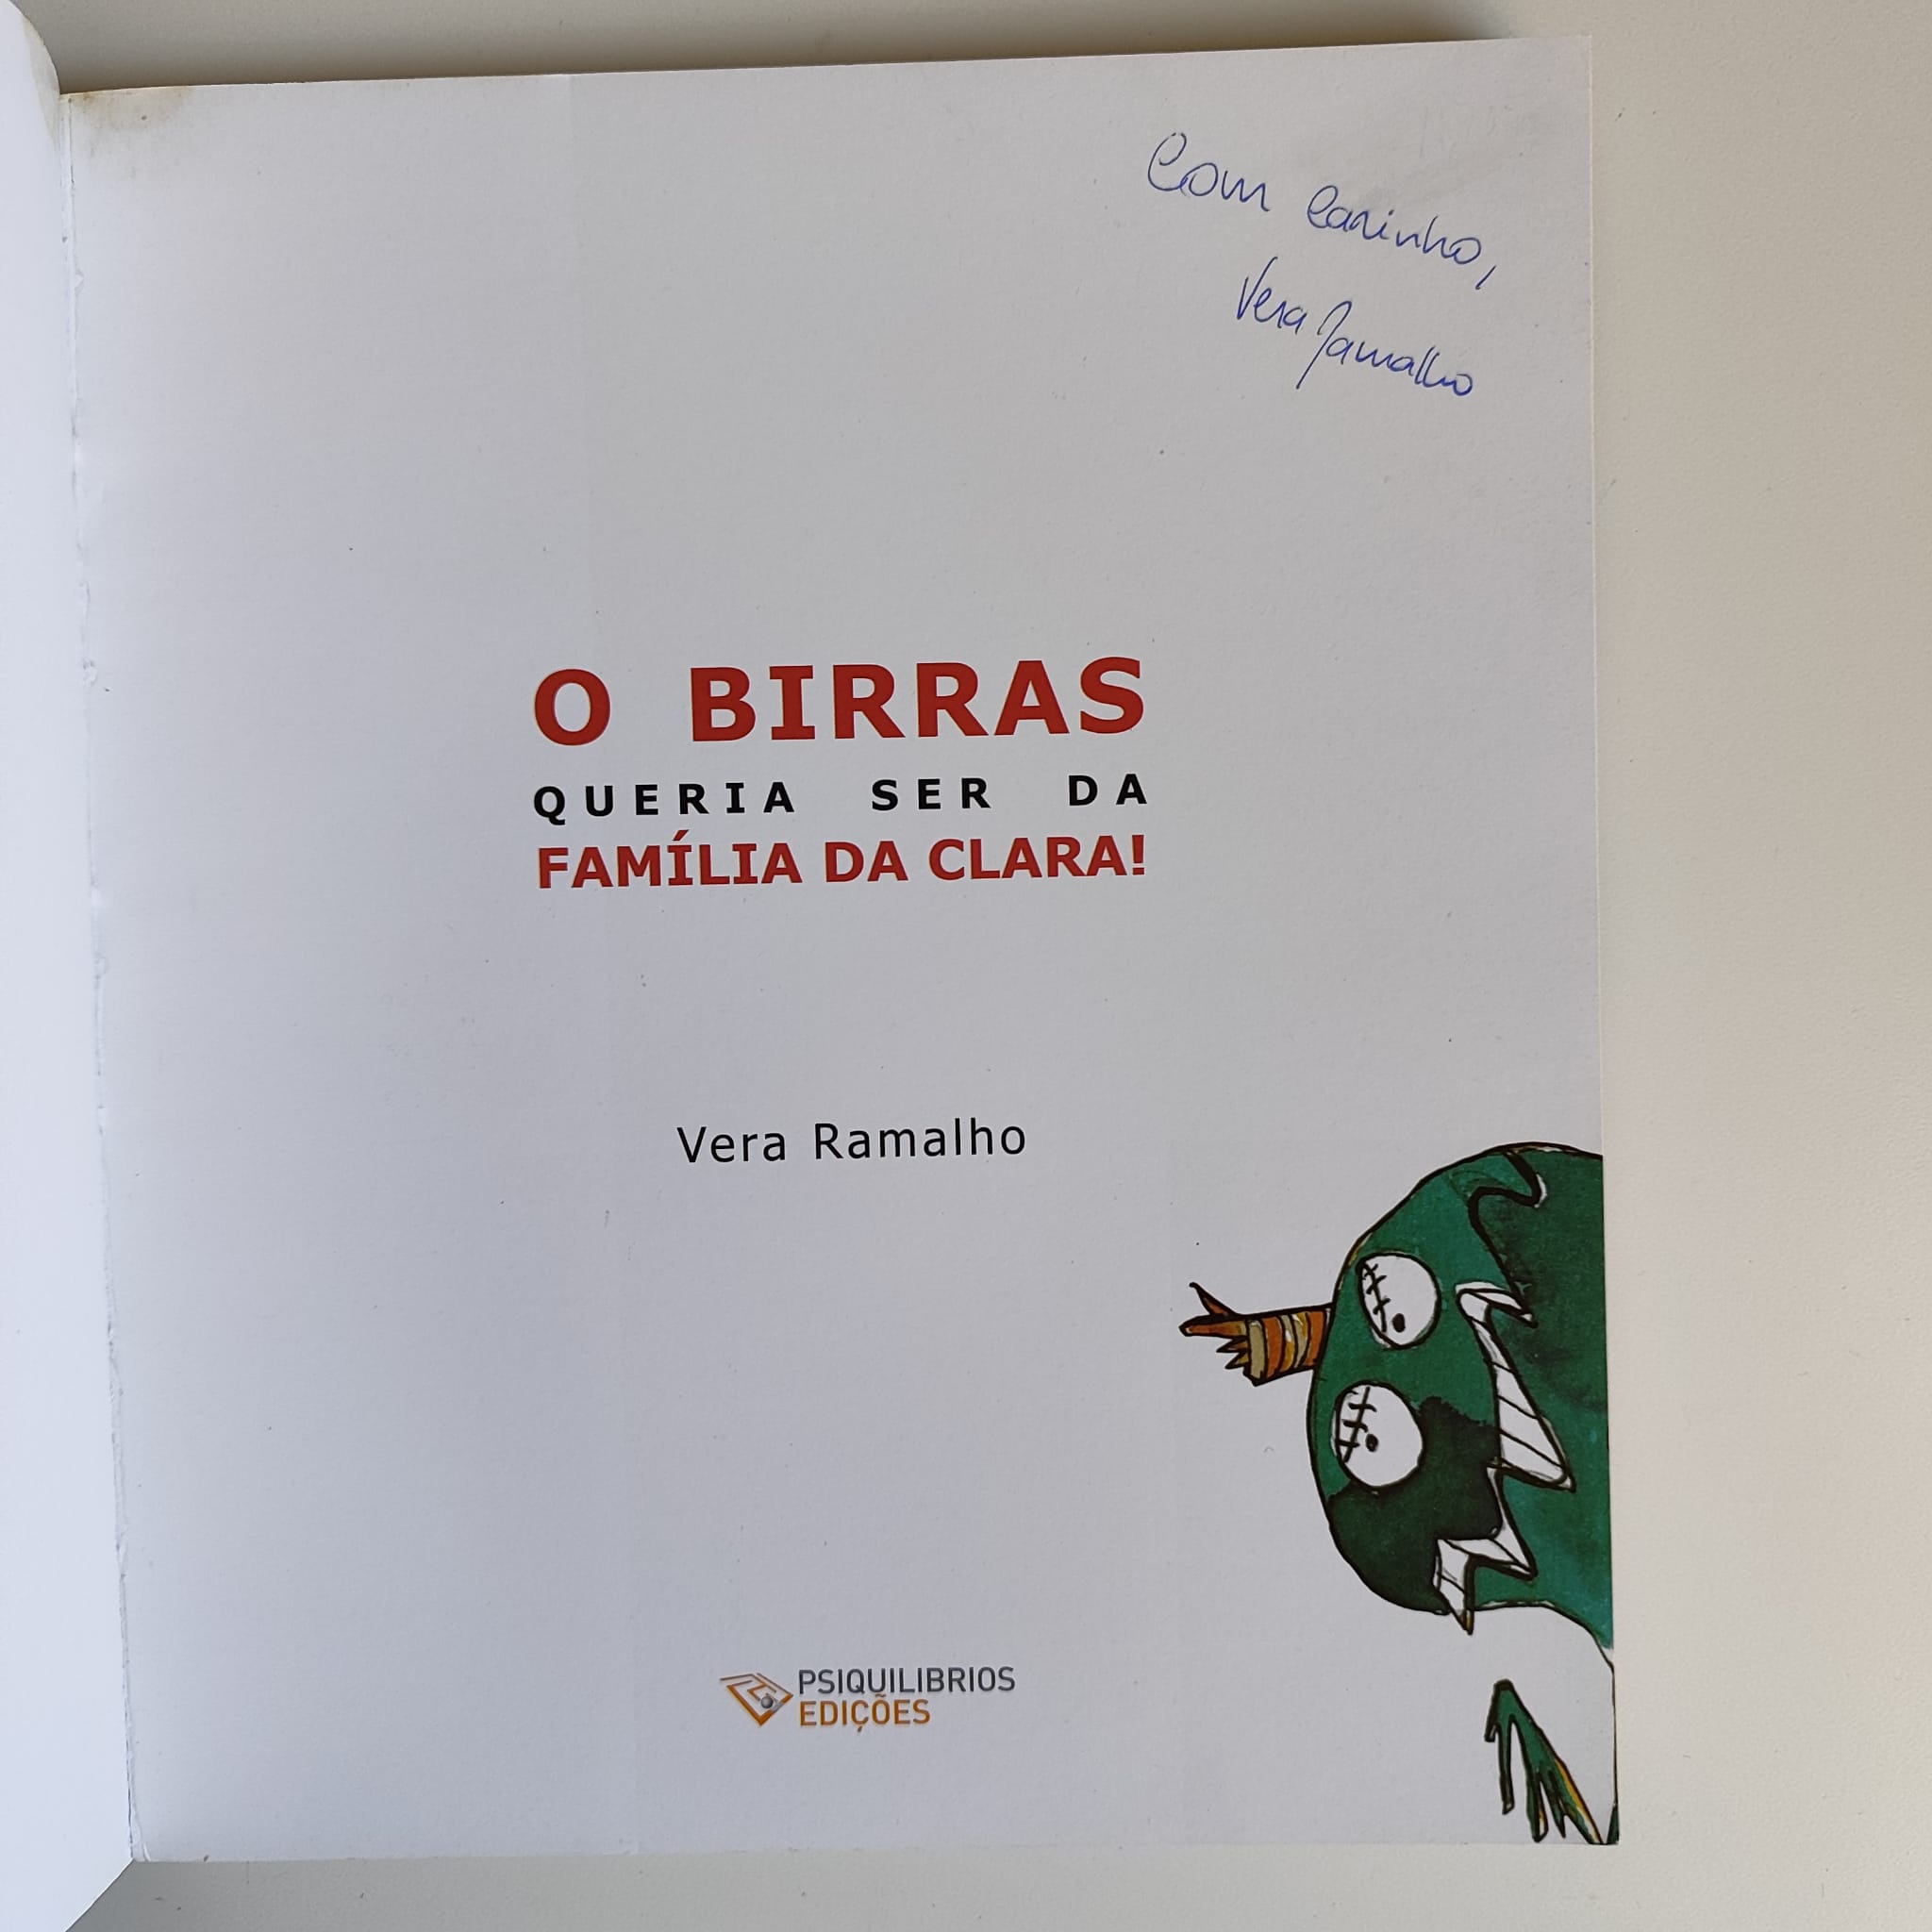 O Birras queria ser da família da Clara!, de Vera Ramalho (via Editora Psiquilibrios)